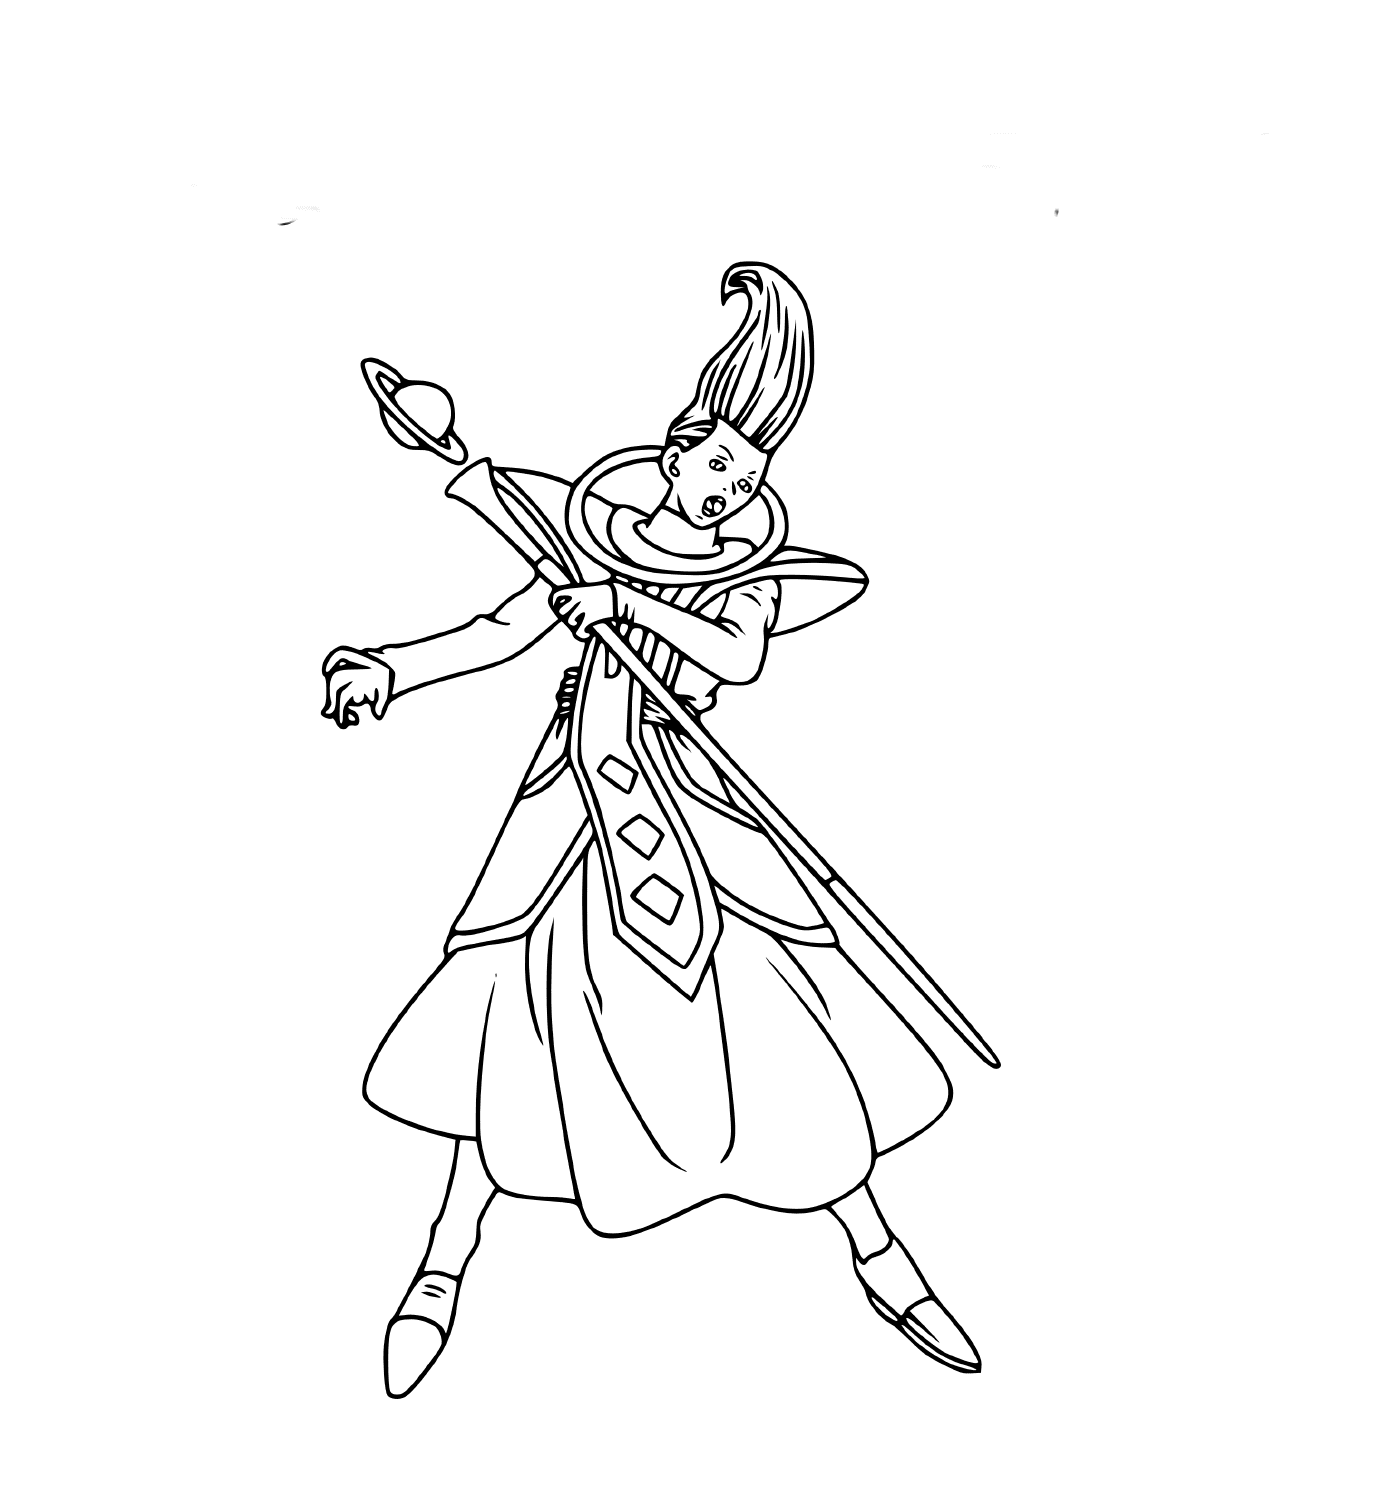  Un personaje misterioso sosteniendo una lanza 